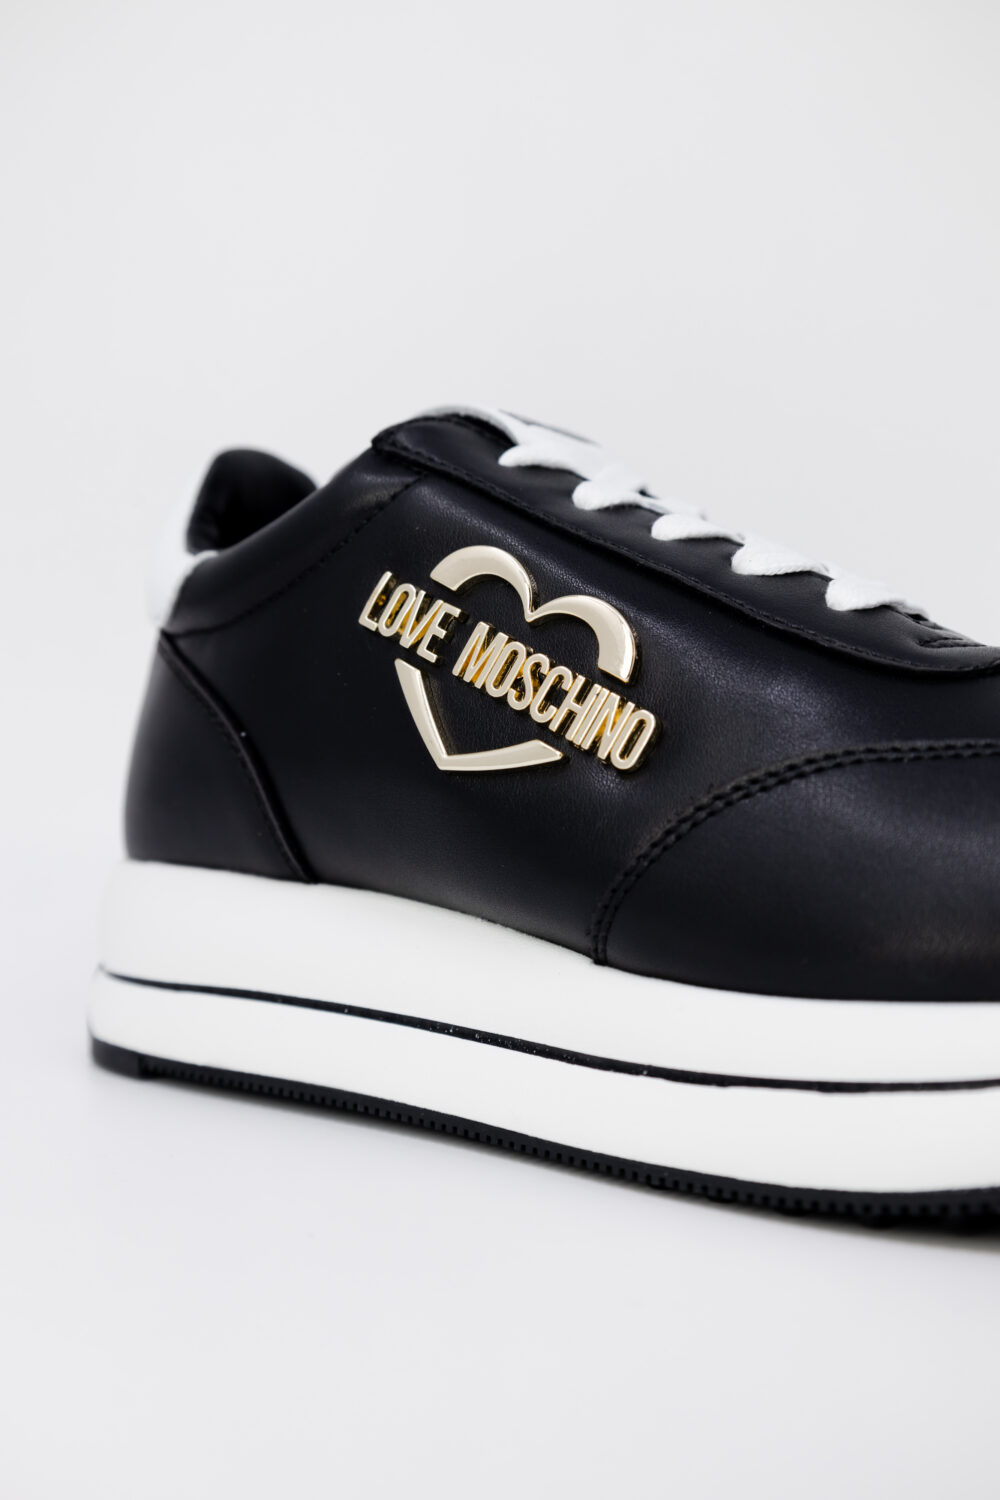 Sneakers Love Moschino RUN40 Nero - Foto 4